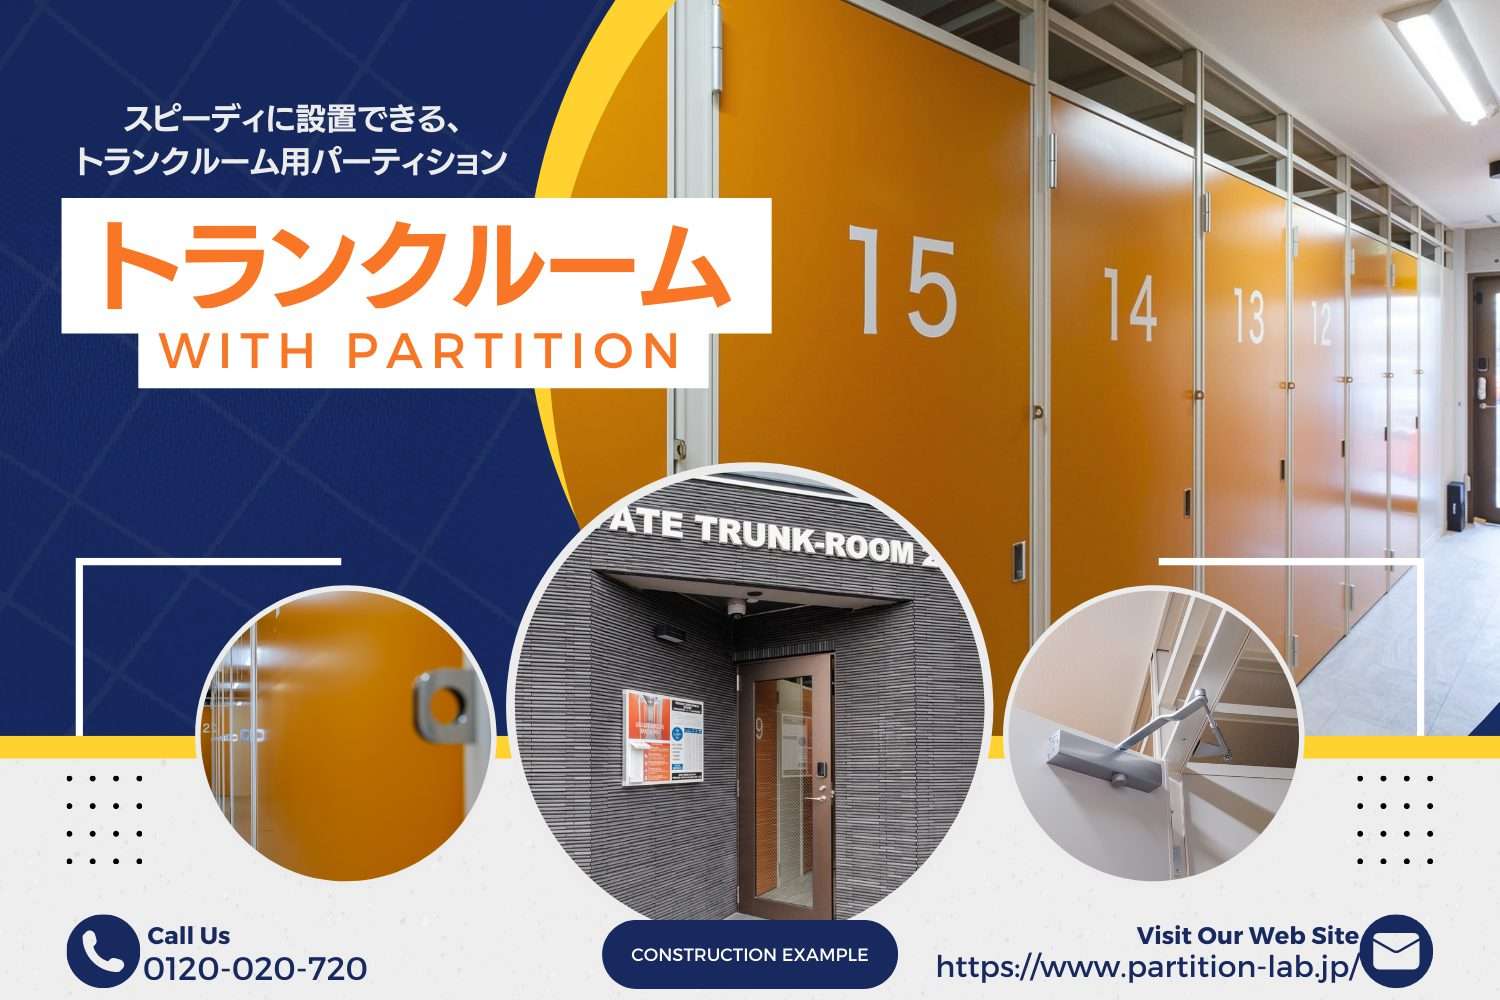 パーテーション施工事例|東京都中央区 トランクルームの間仕切